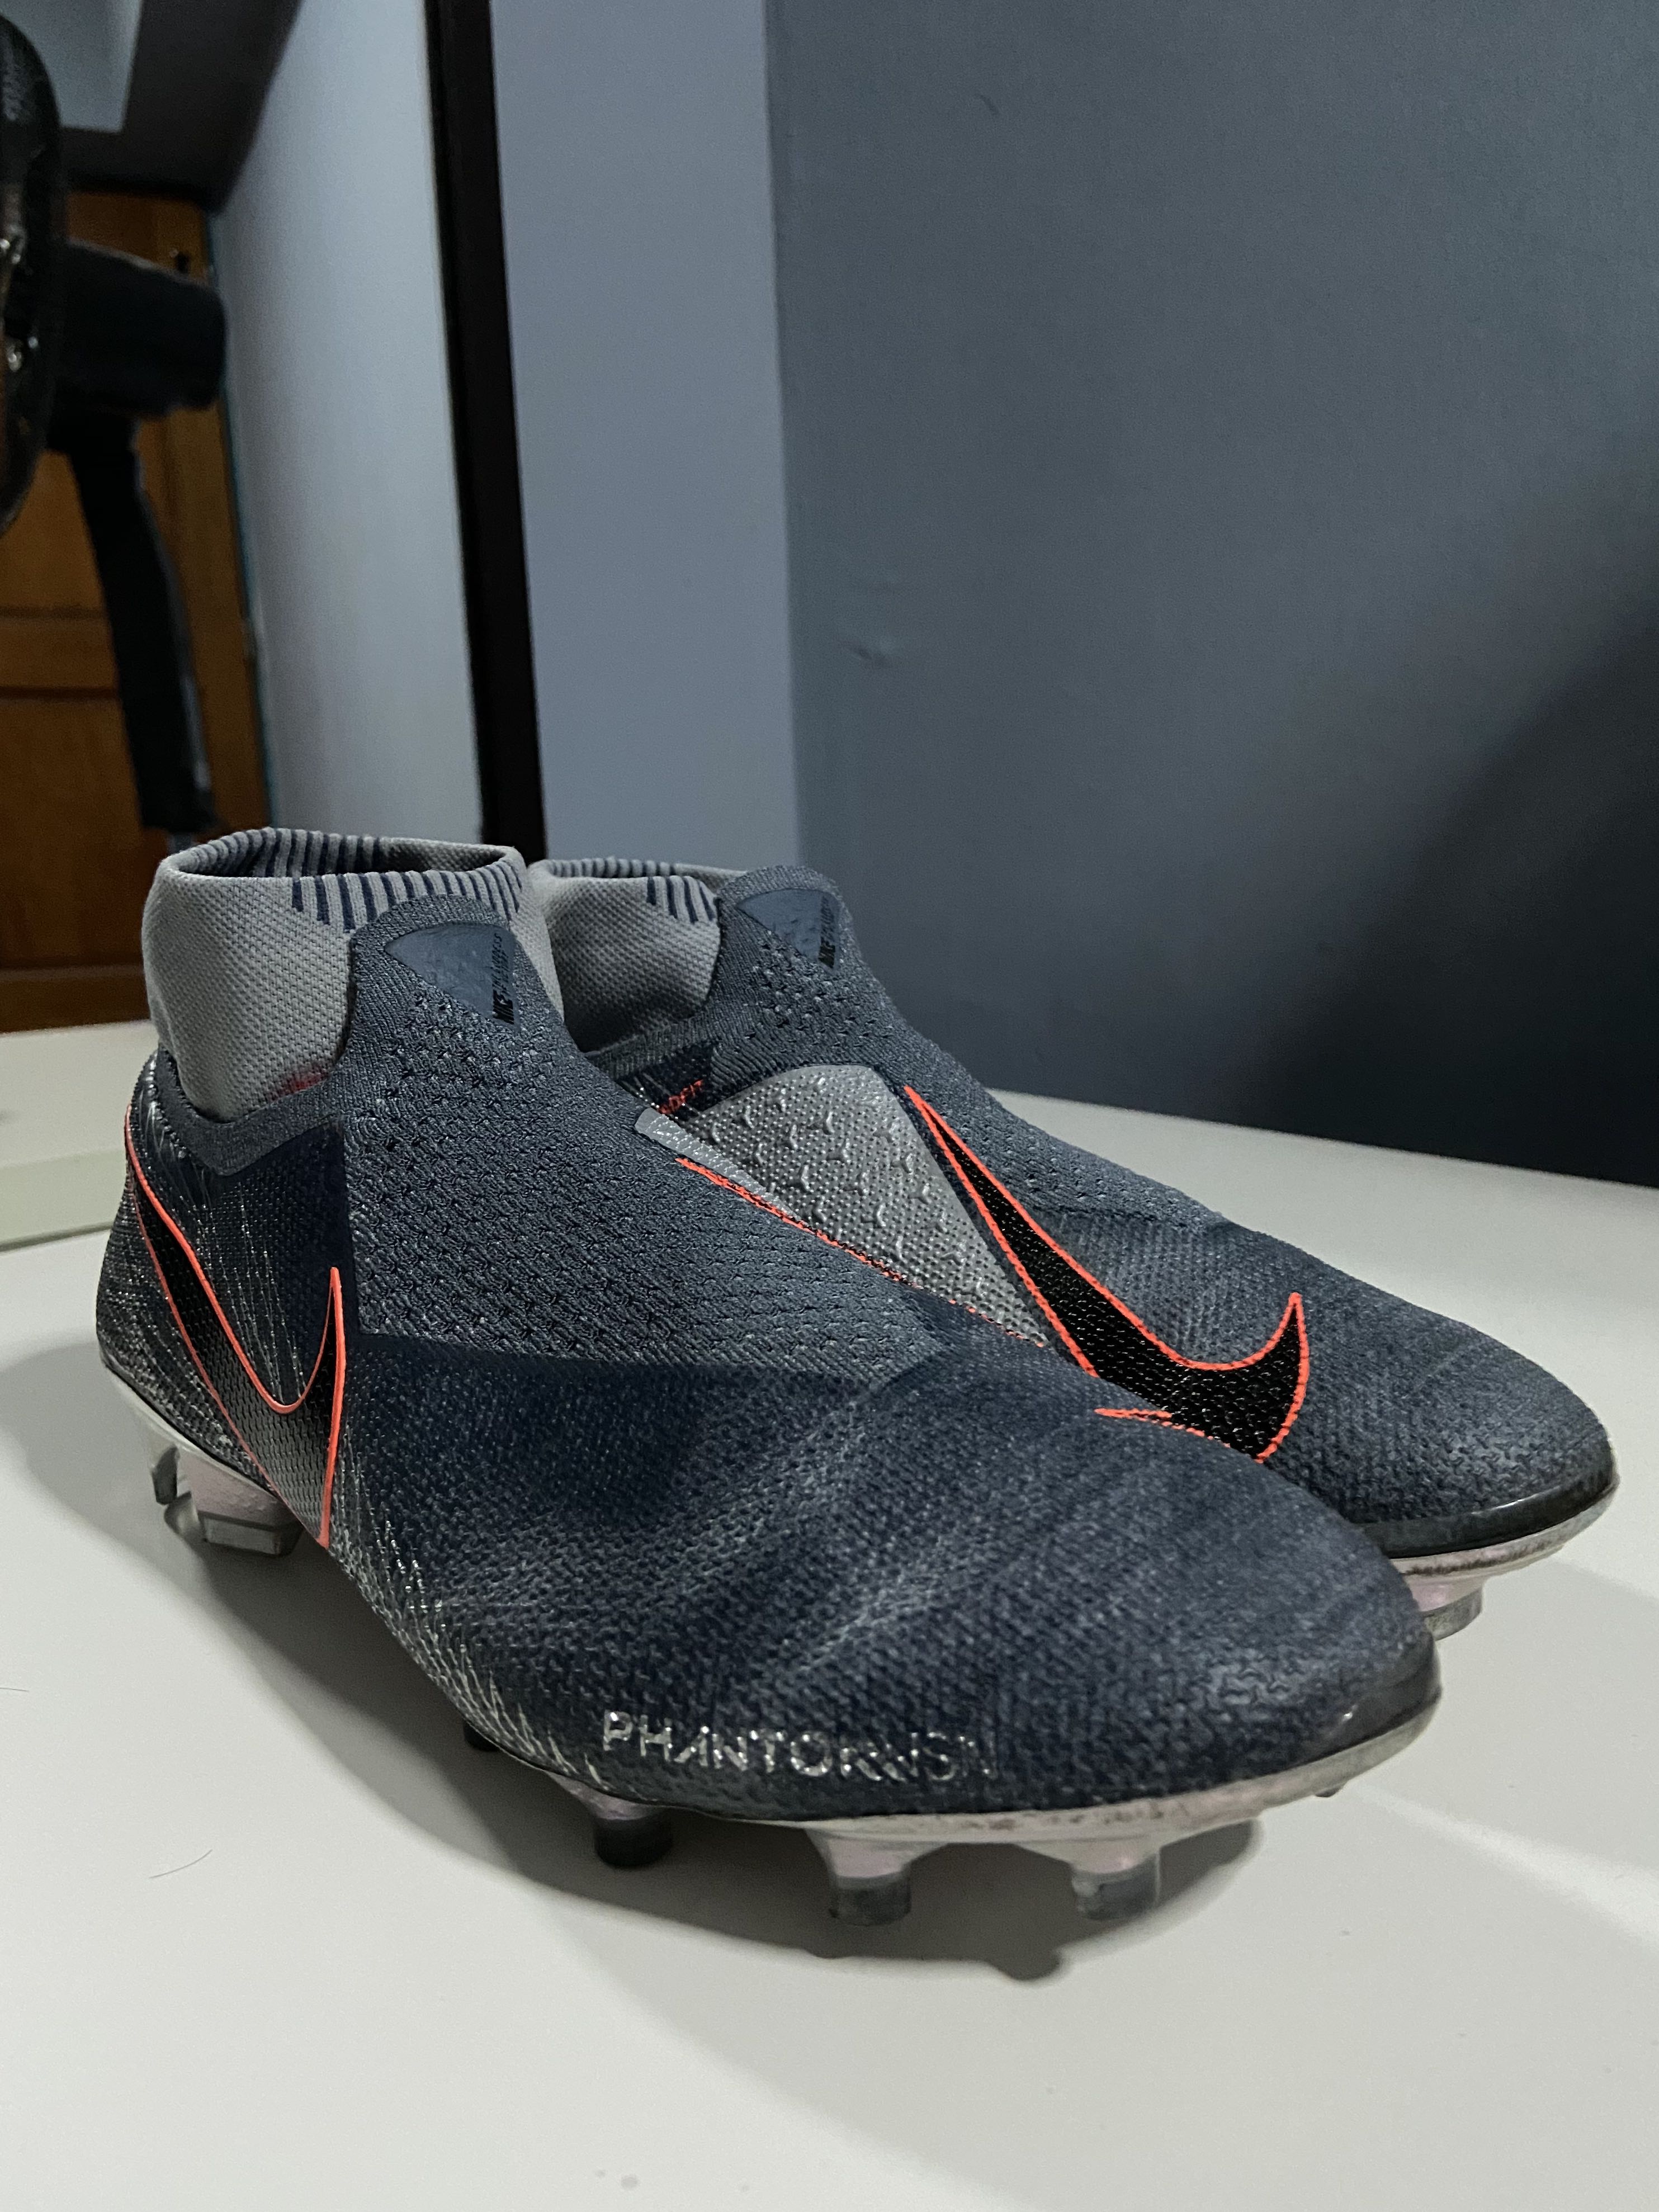 Nike Phantom VSN Boots Released